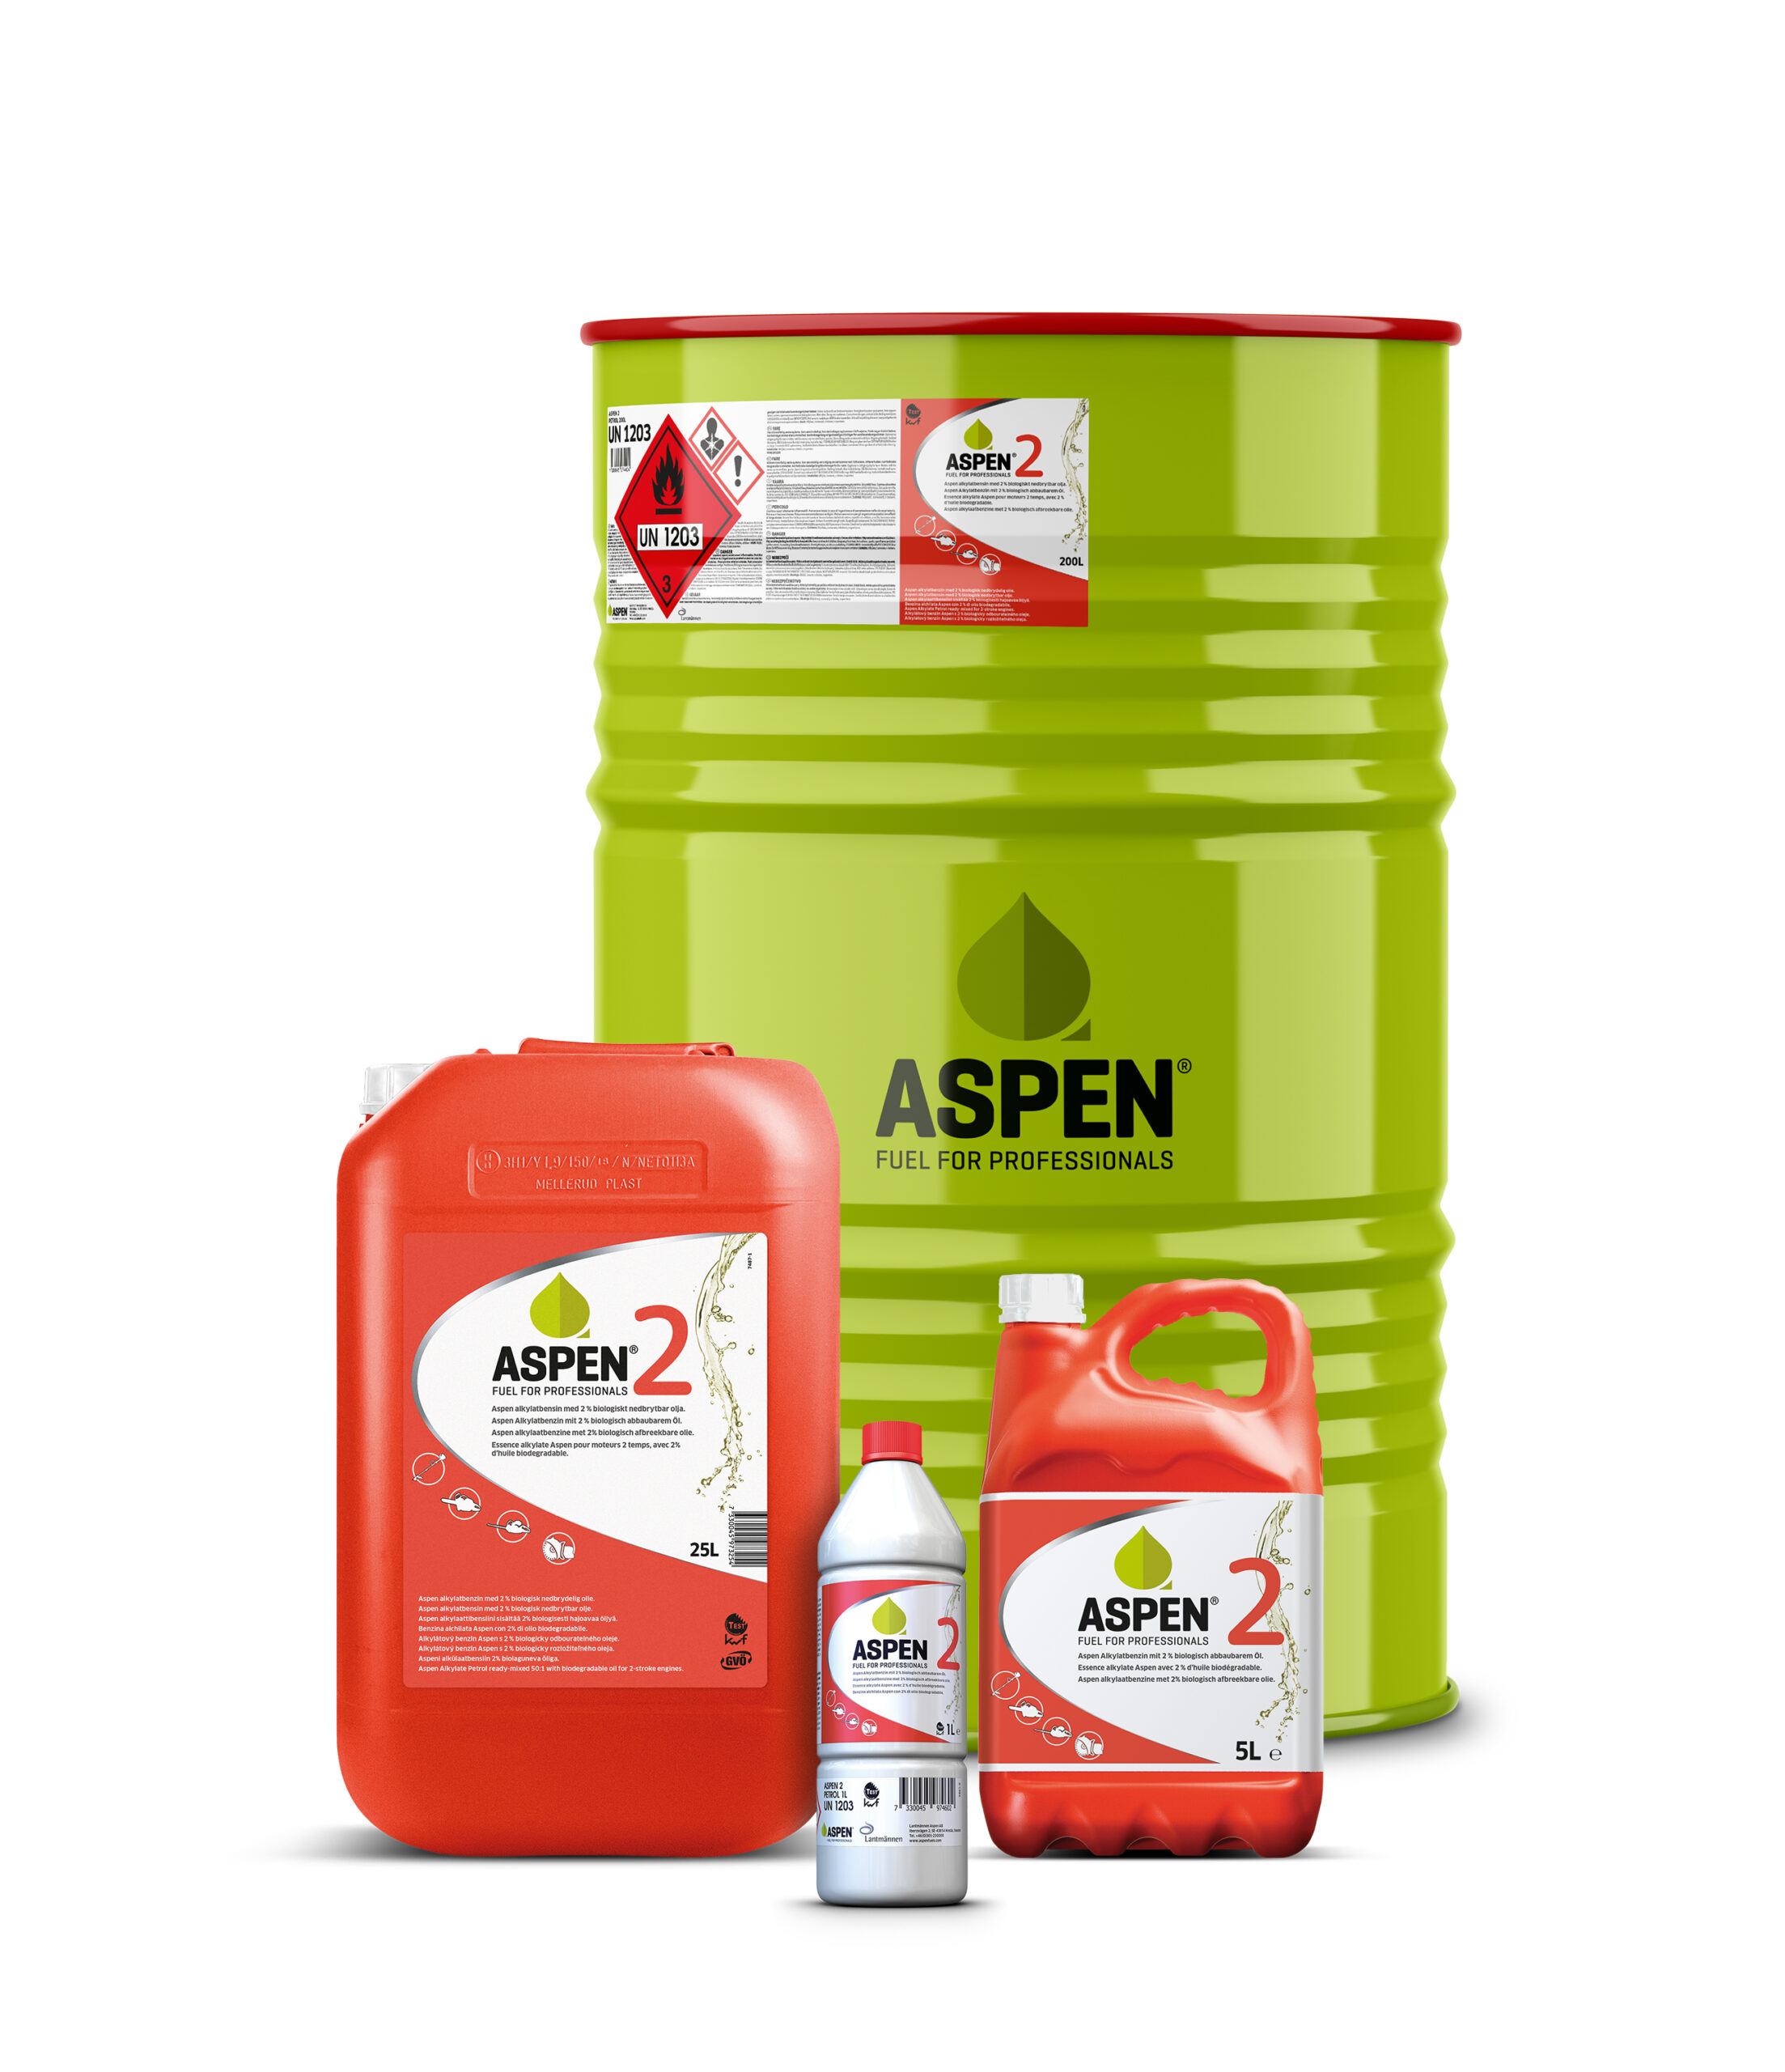 Aspen 2 Fuel for Professionals